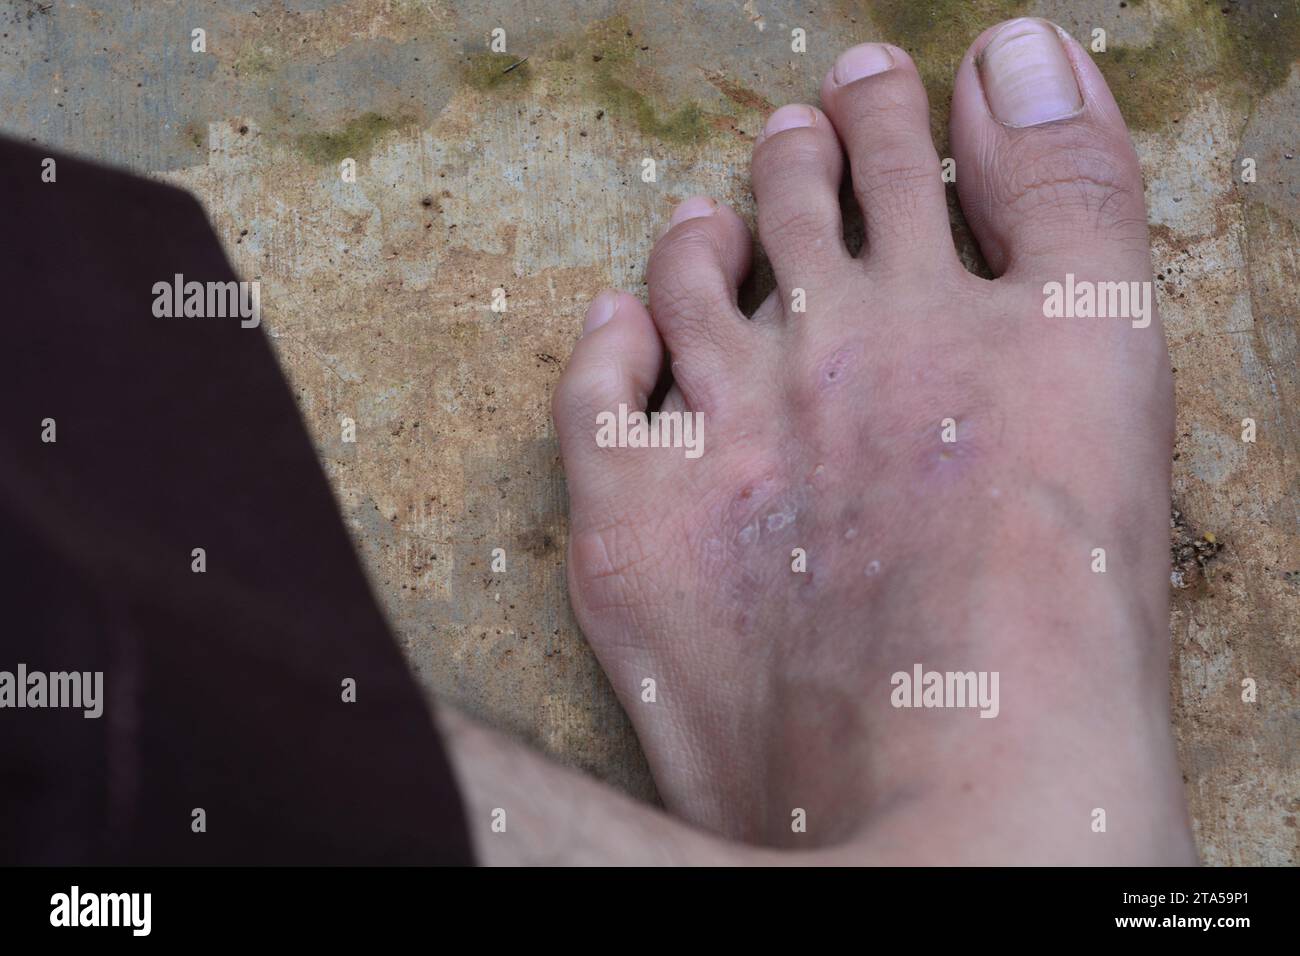 Fotos von juckenden Füßen, Fotos mit dem Thema Gesundheit Stockfoto